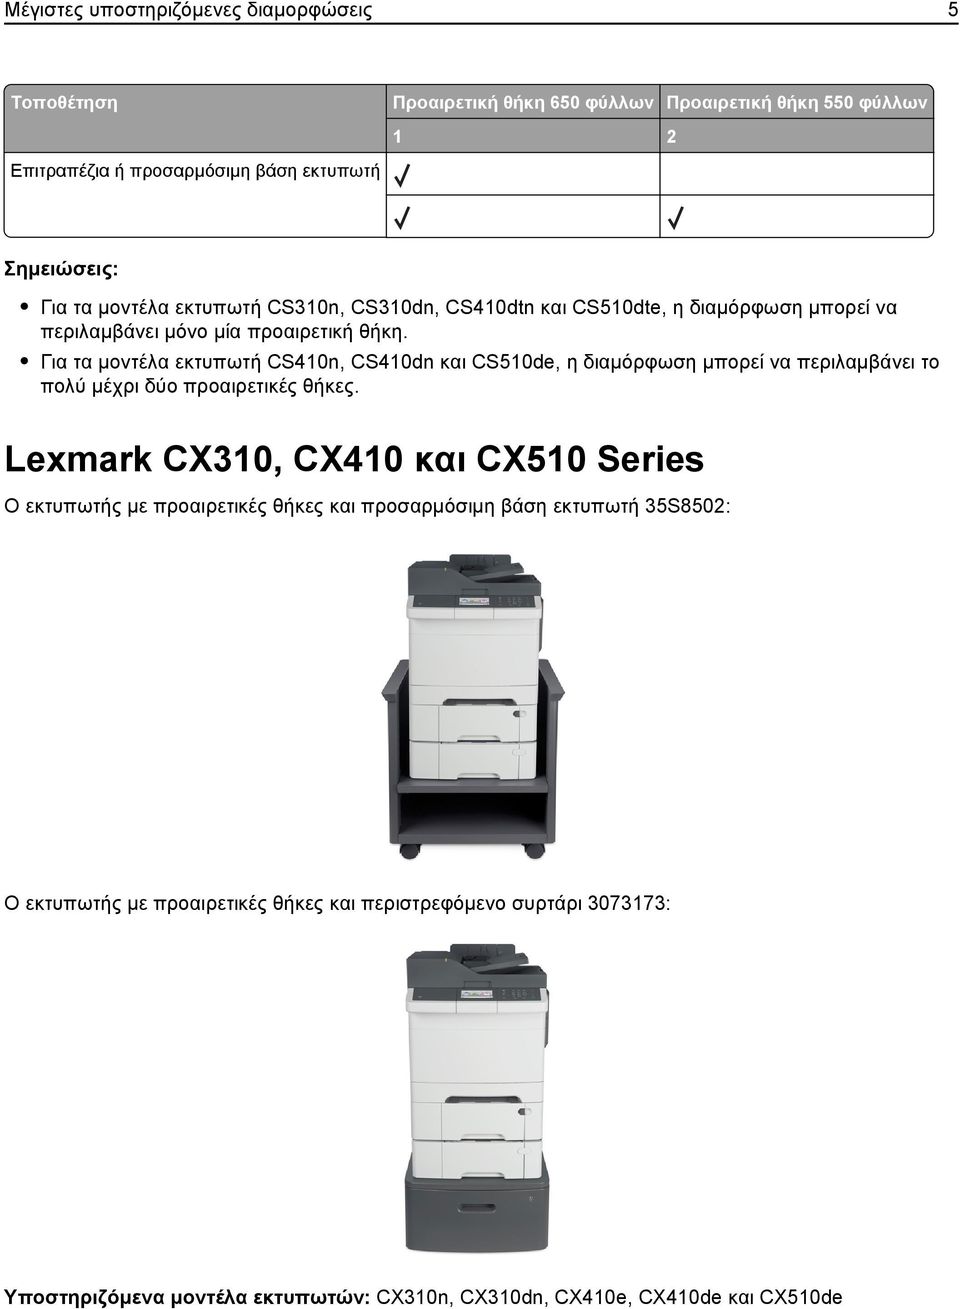 Για τα μοντέλα εκτυπωτή CS410n, CS410dn και CS510de, η διαμόρφωση μπορεί να περιλαμβάνει το πολύ μέχρι δύο προαιρετικές θήκες.